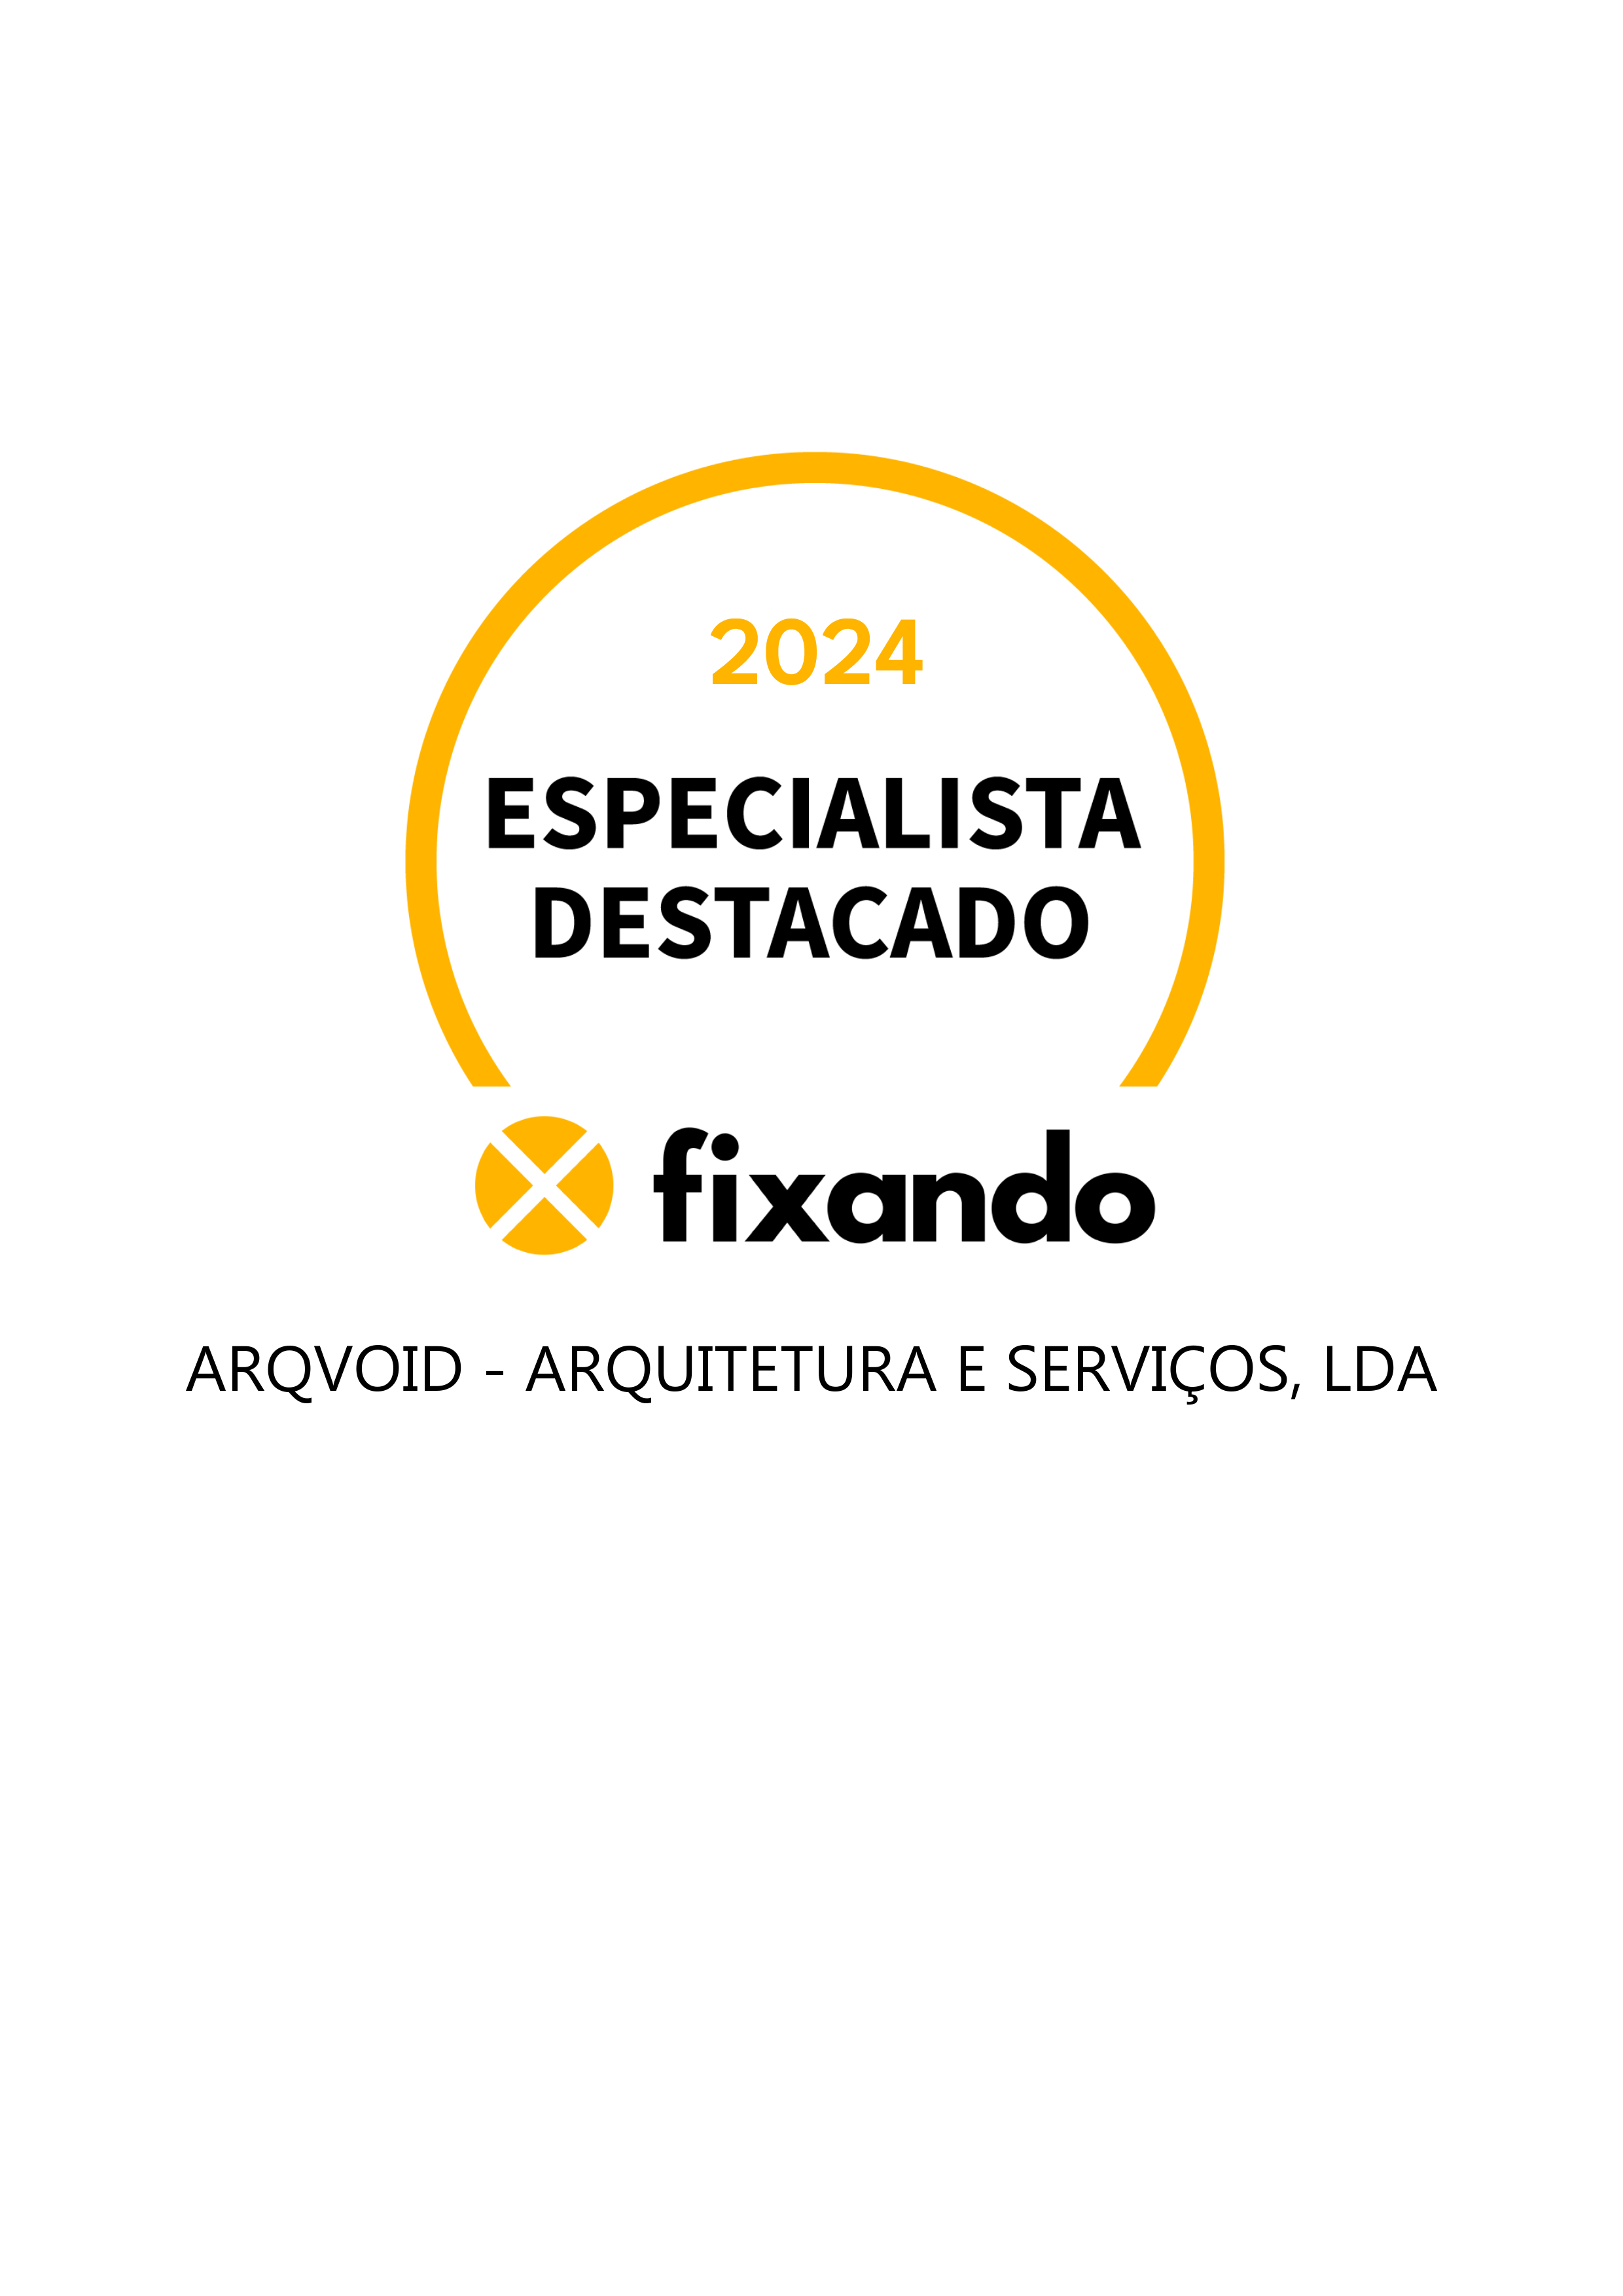 Arqvoid - arquitetura e serviços, lda - Vila do Conde - Valorização Imobiliária